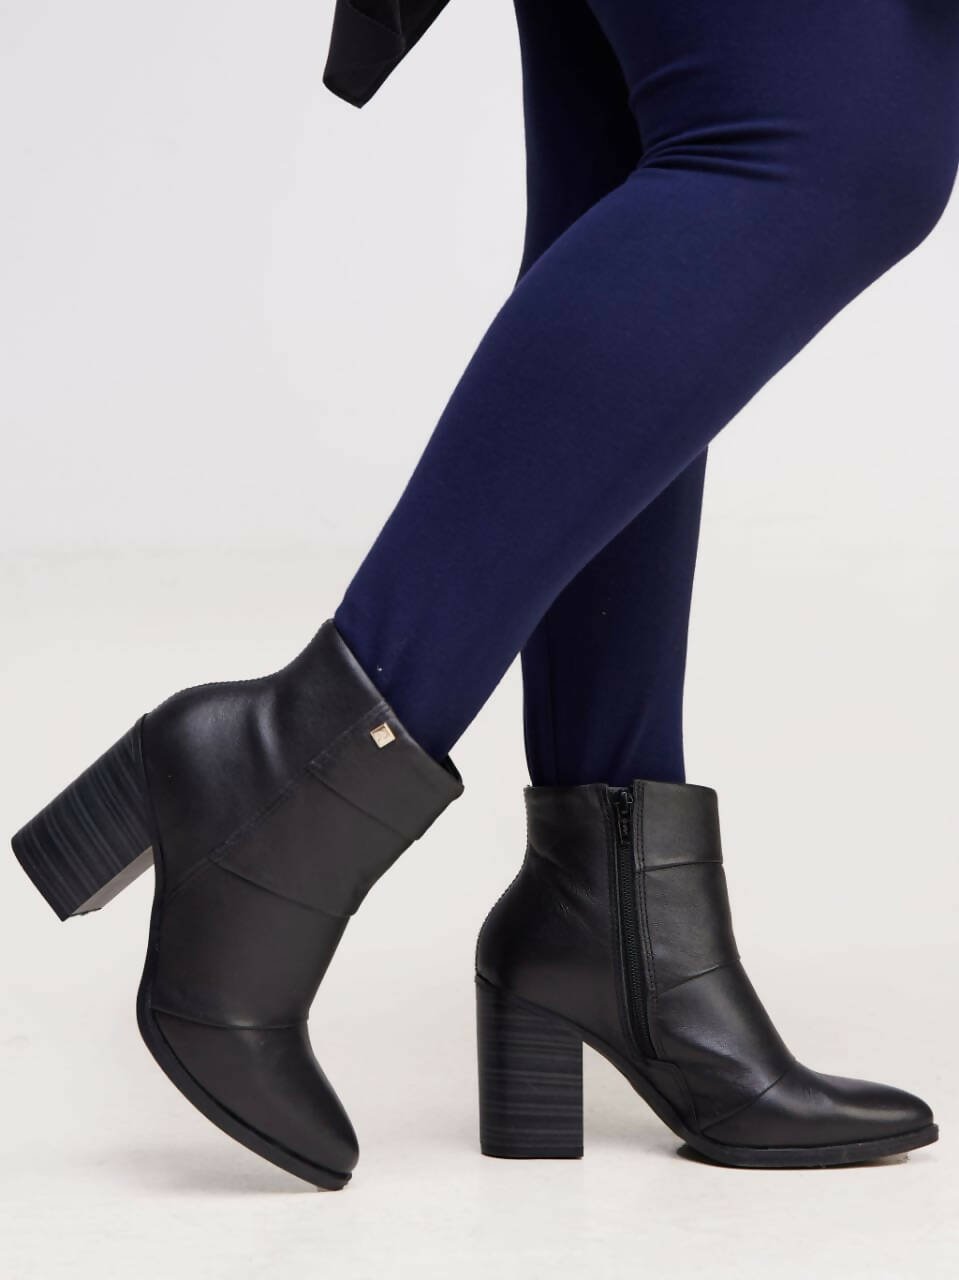 Skarpa Shoes Short Boots - Black - Shopzetu